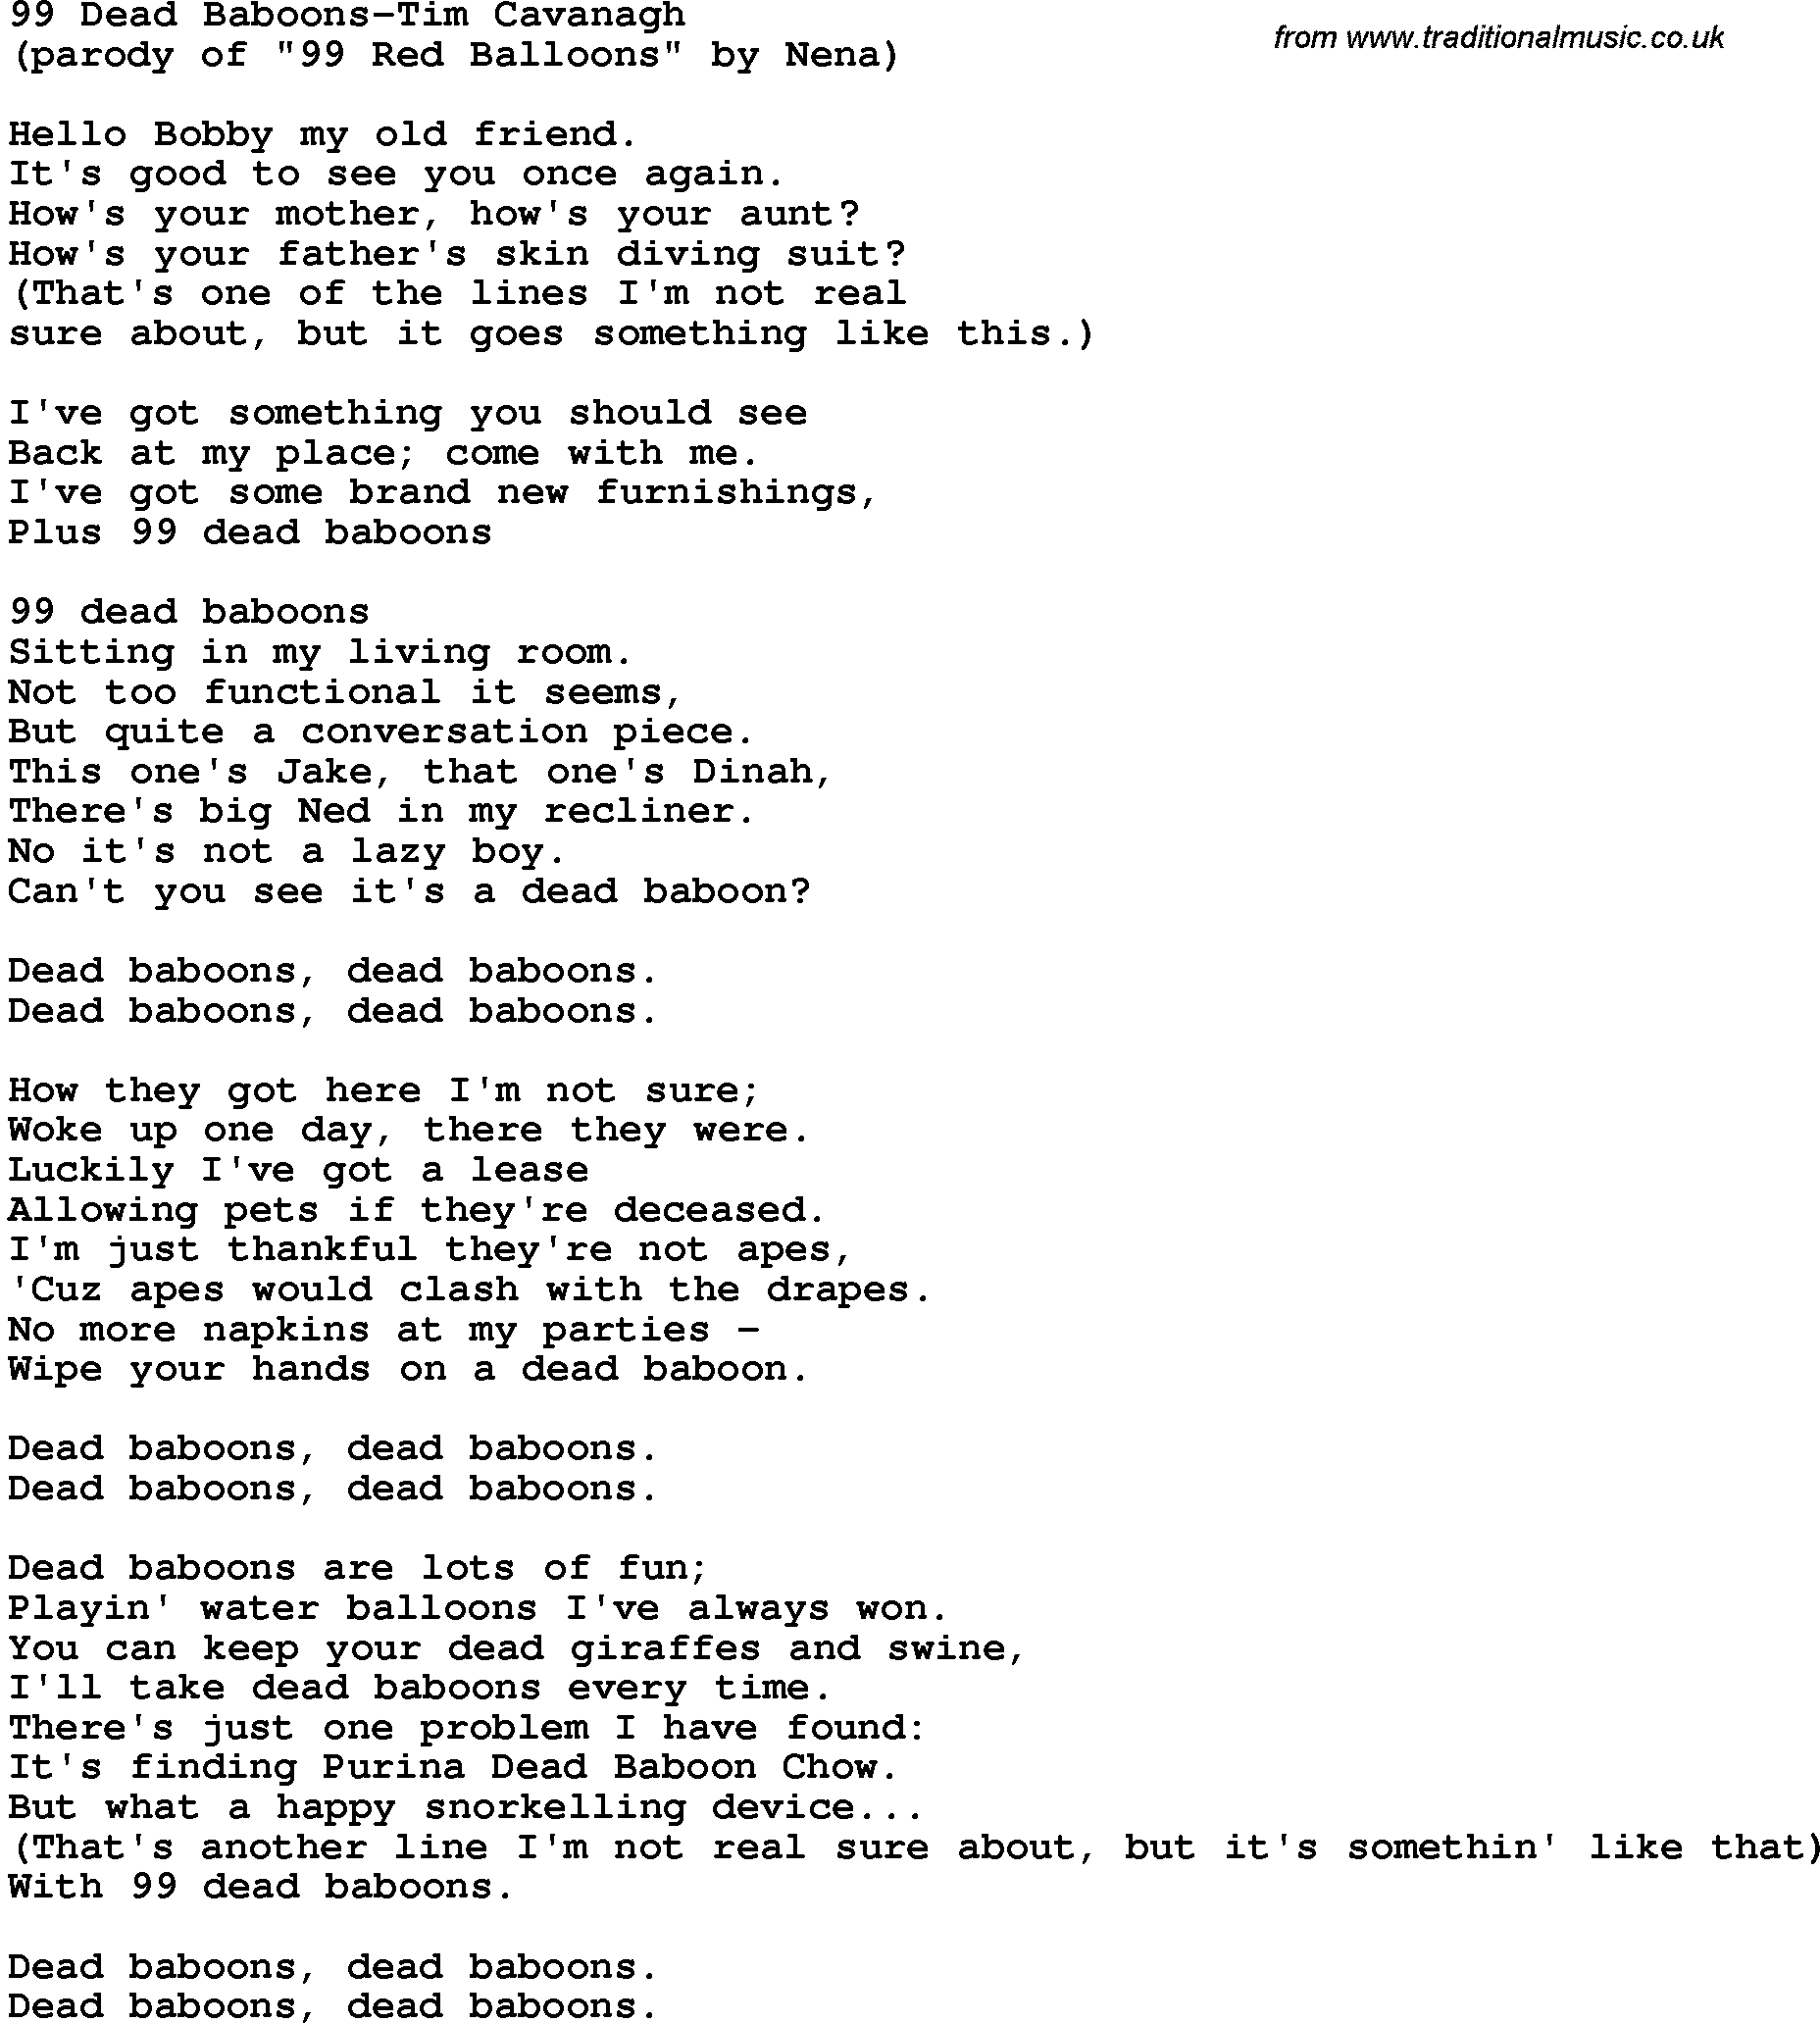 Novelty song: 99 Dead Baboons-Tim Cavanagh lyrics